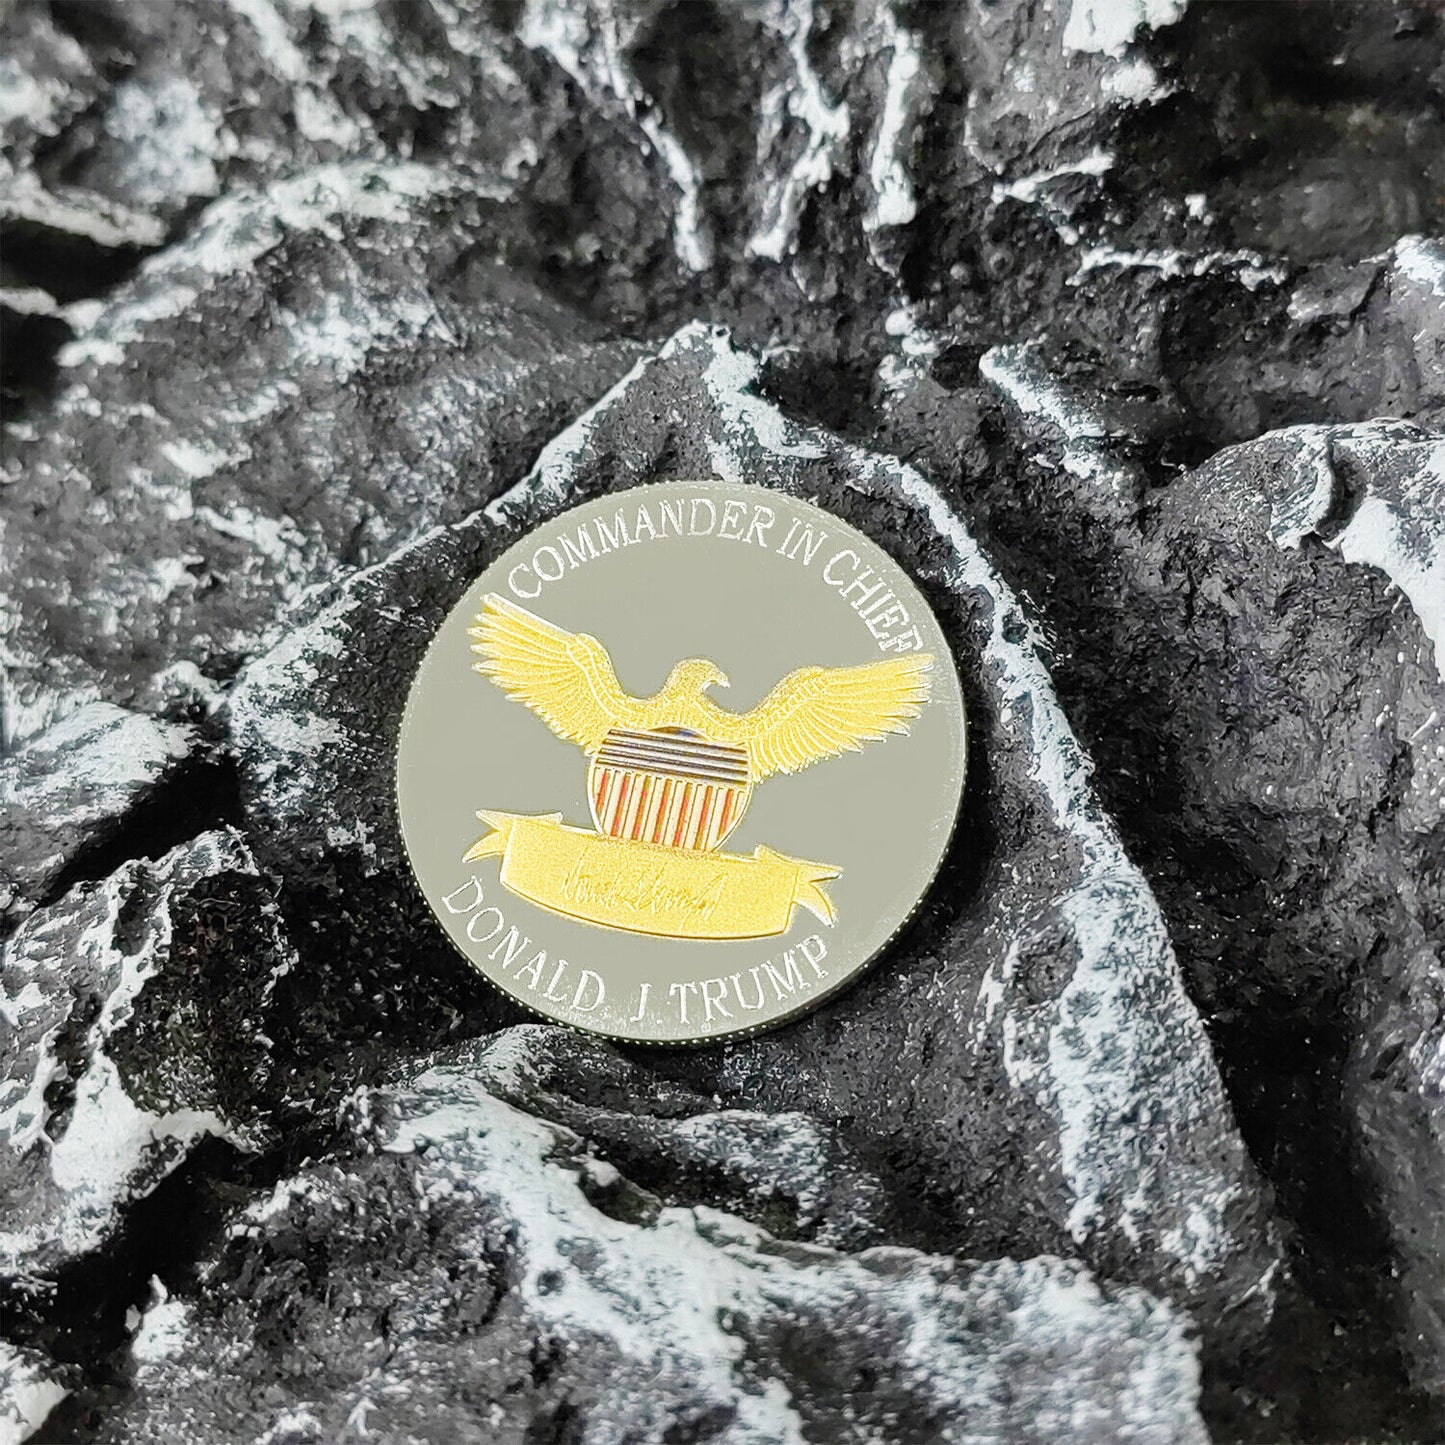 2020 Patriot Donald Trump Eagle Silver Coin Presidential Collectible Coins